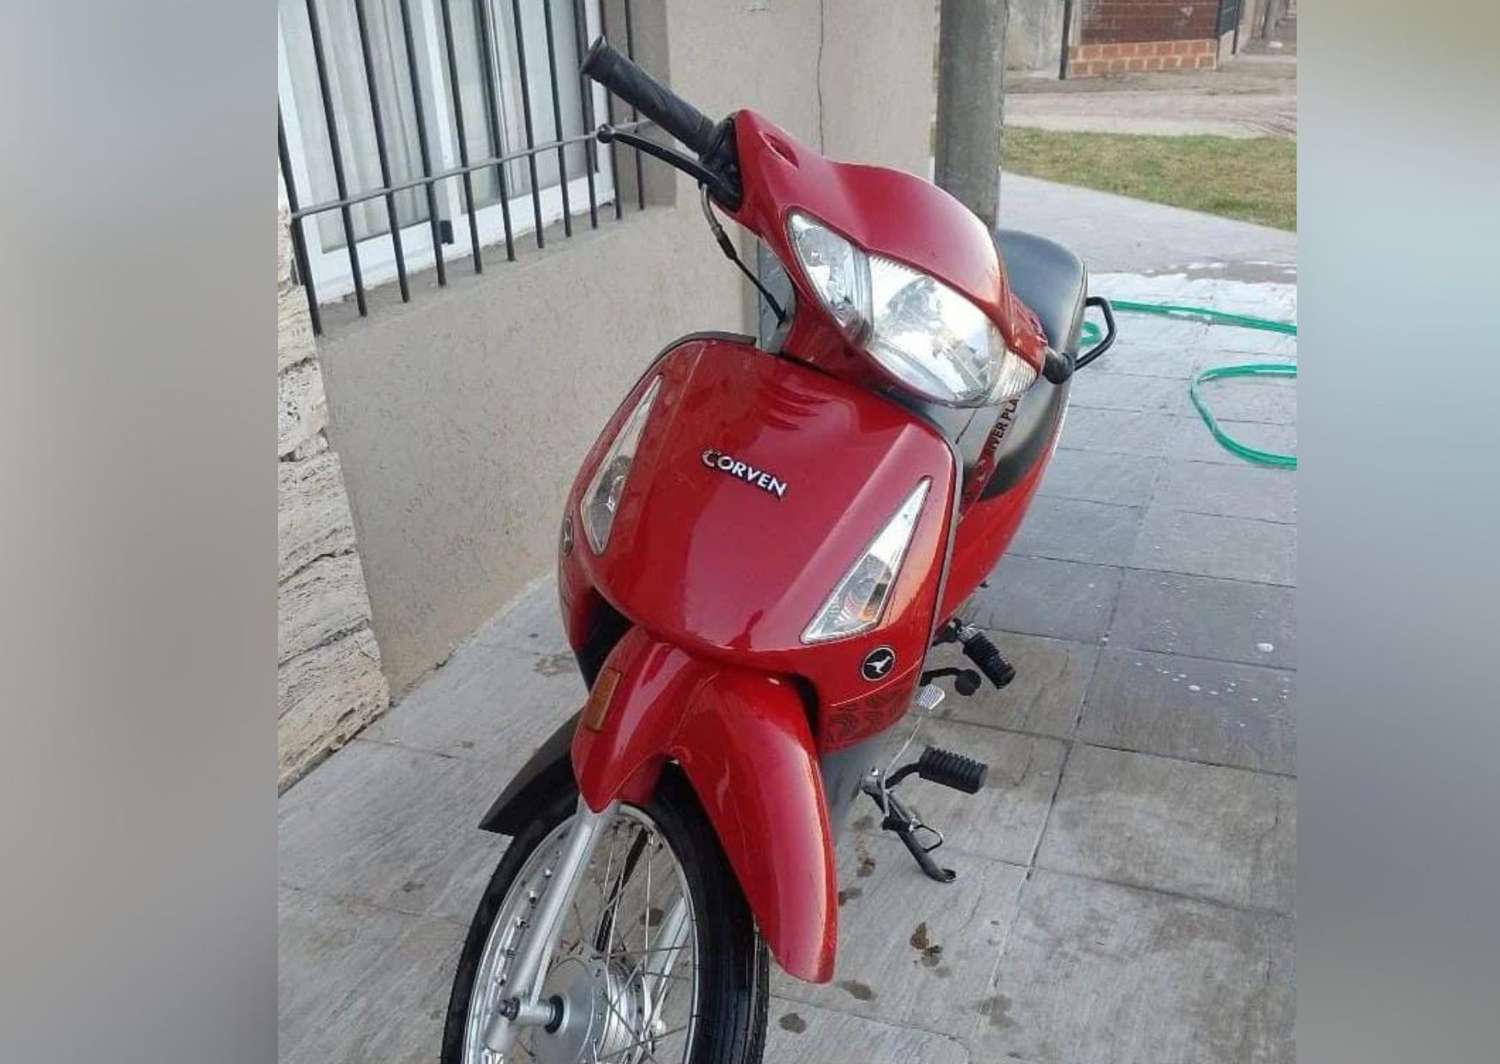 Dejó la moto estacionada afuera de la escuela y se la robaron